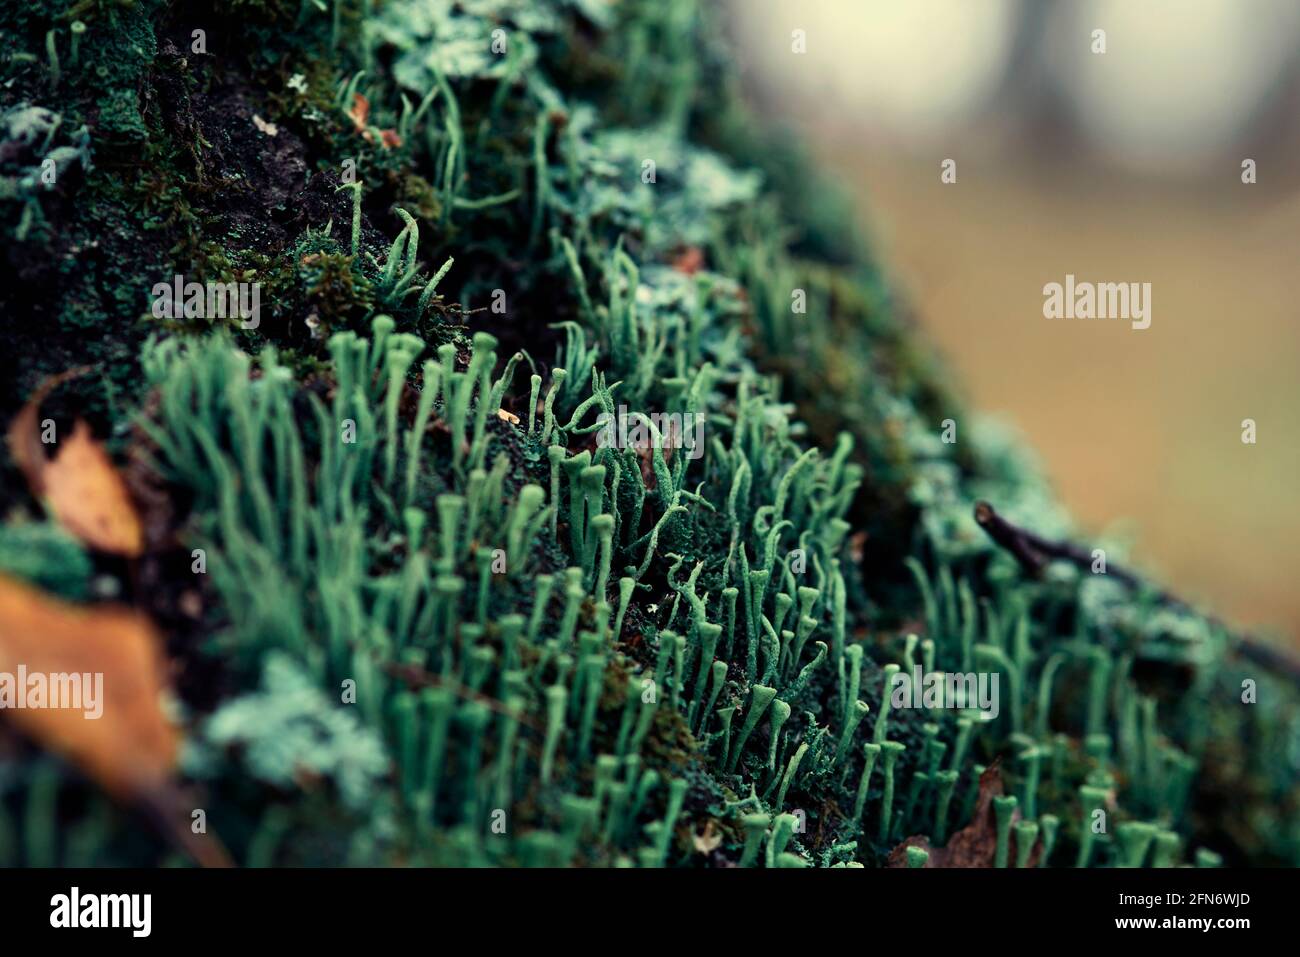 Lichen cladonia coniocraea and moss on tree bark in autumn forest. Stock Photo